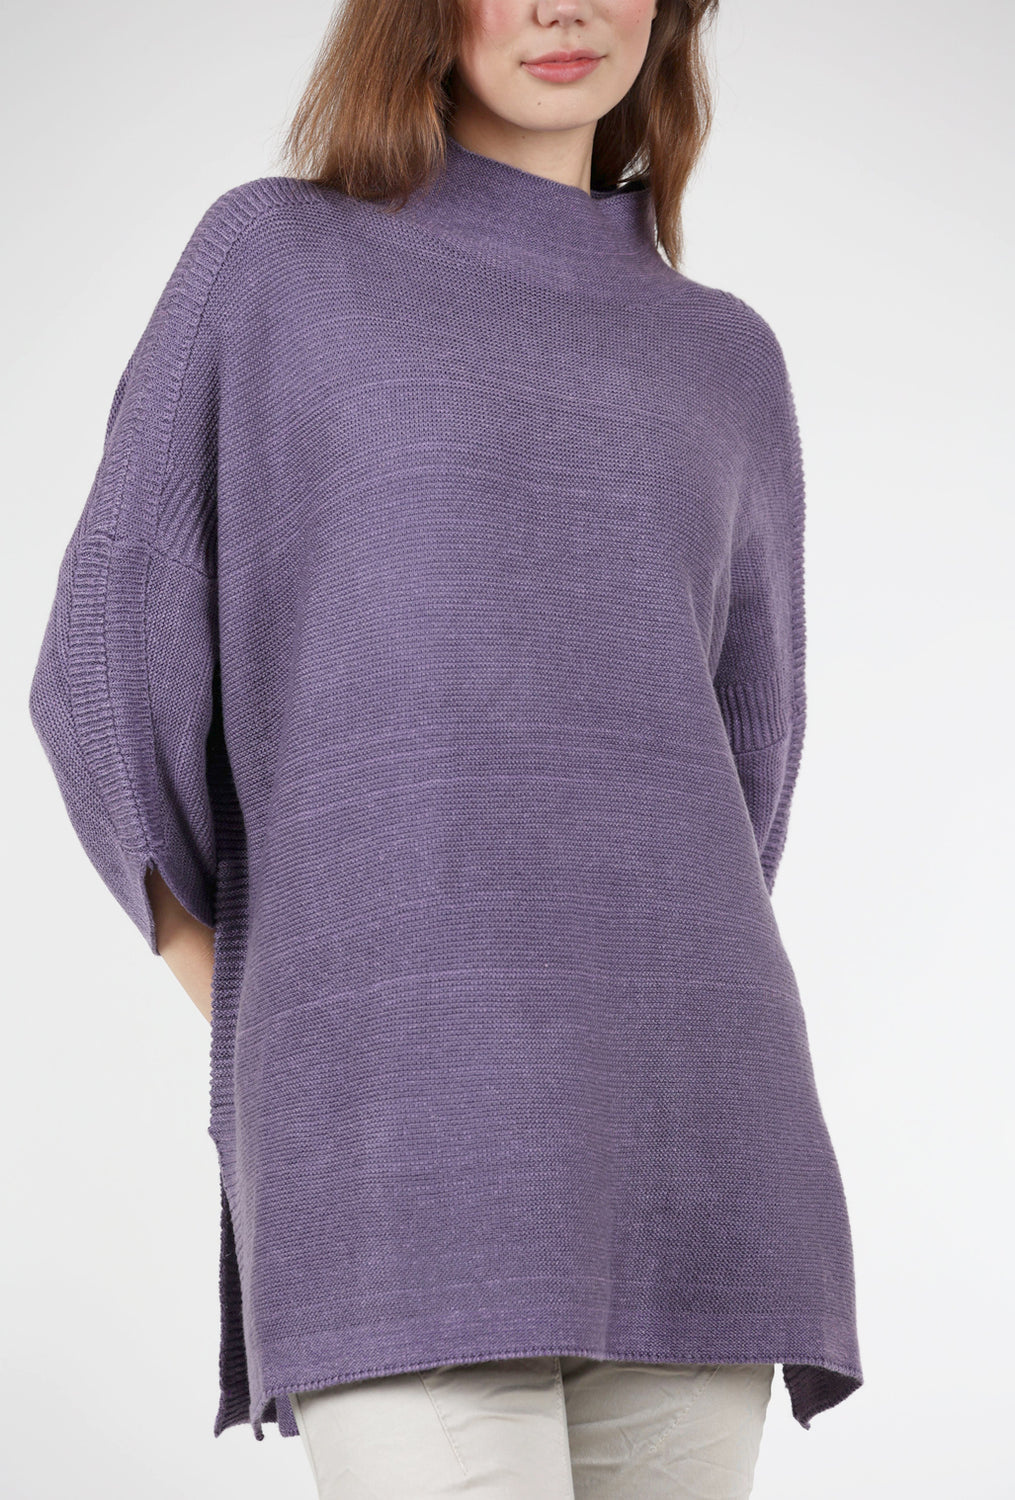 Boho Sweater, Vintage Violet